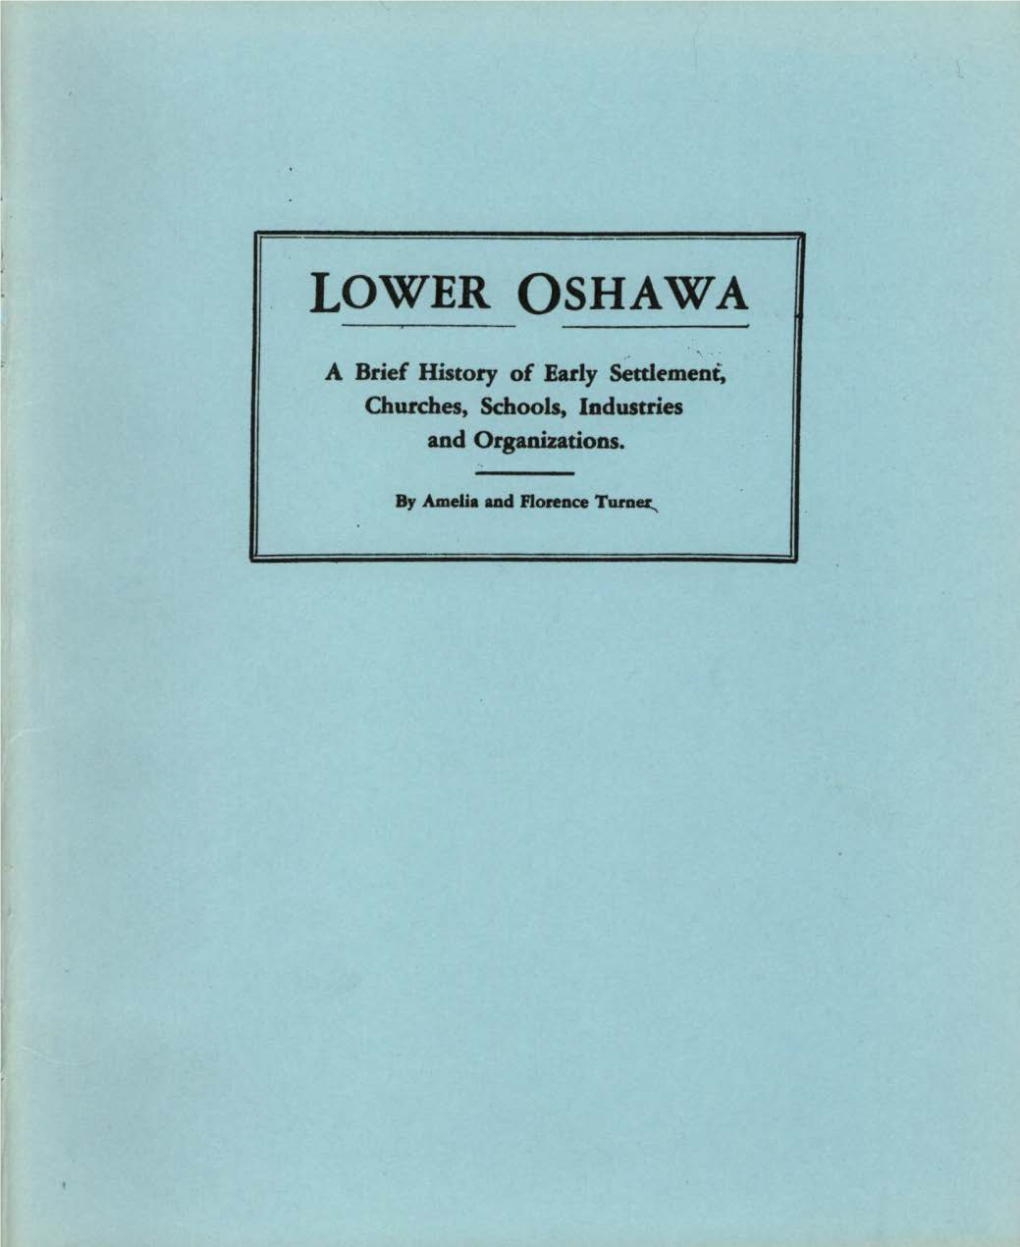 Lower Oshawa